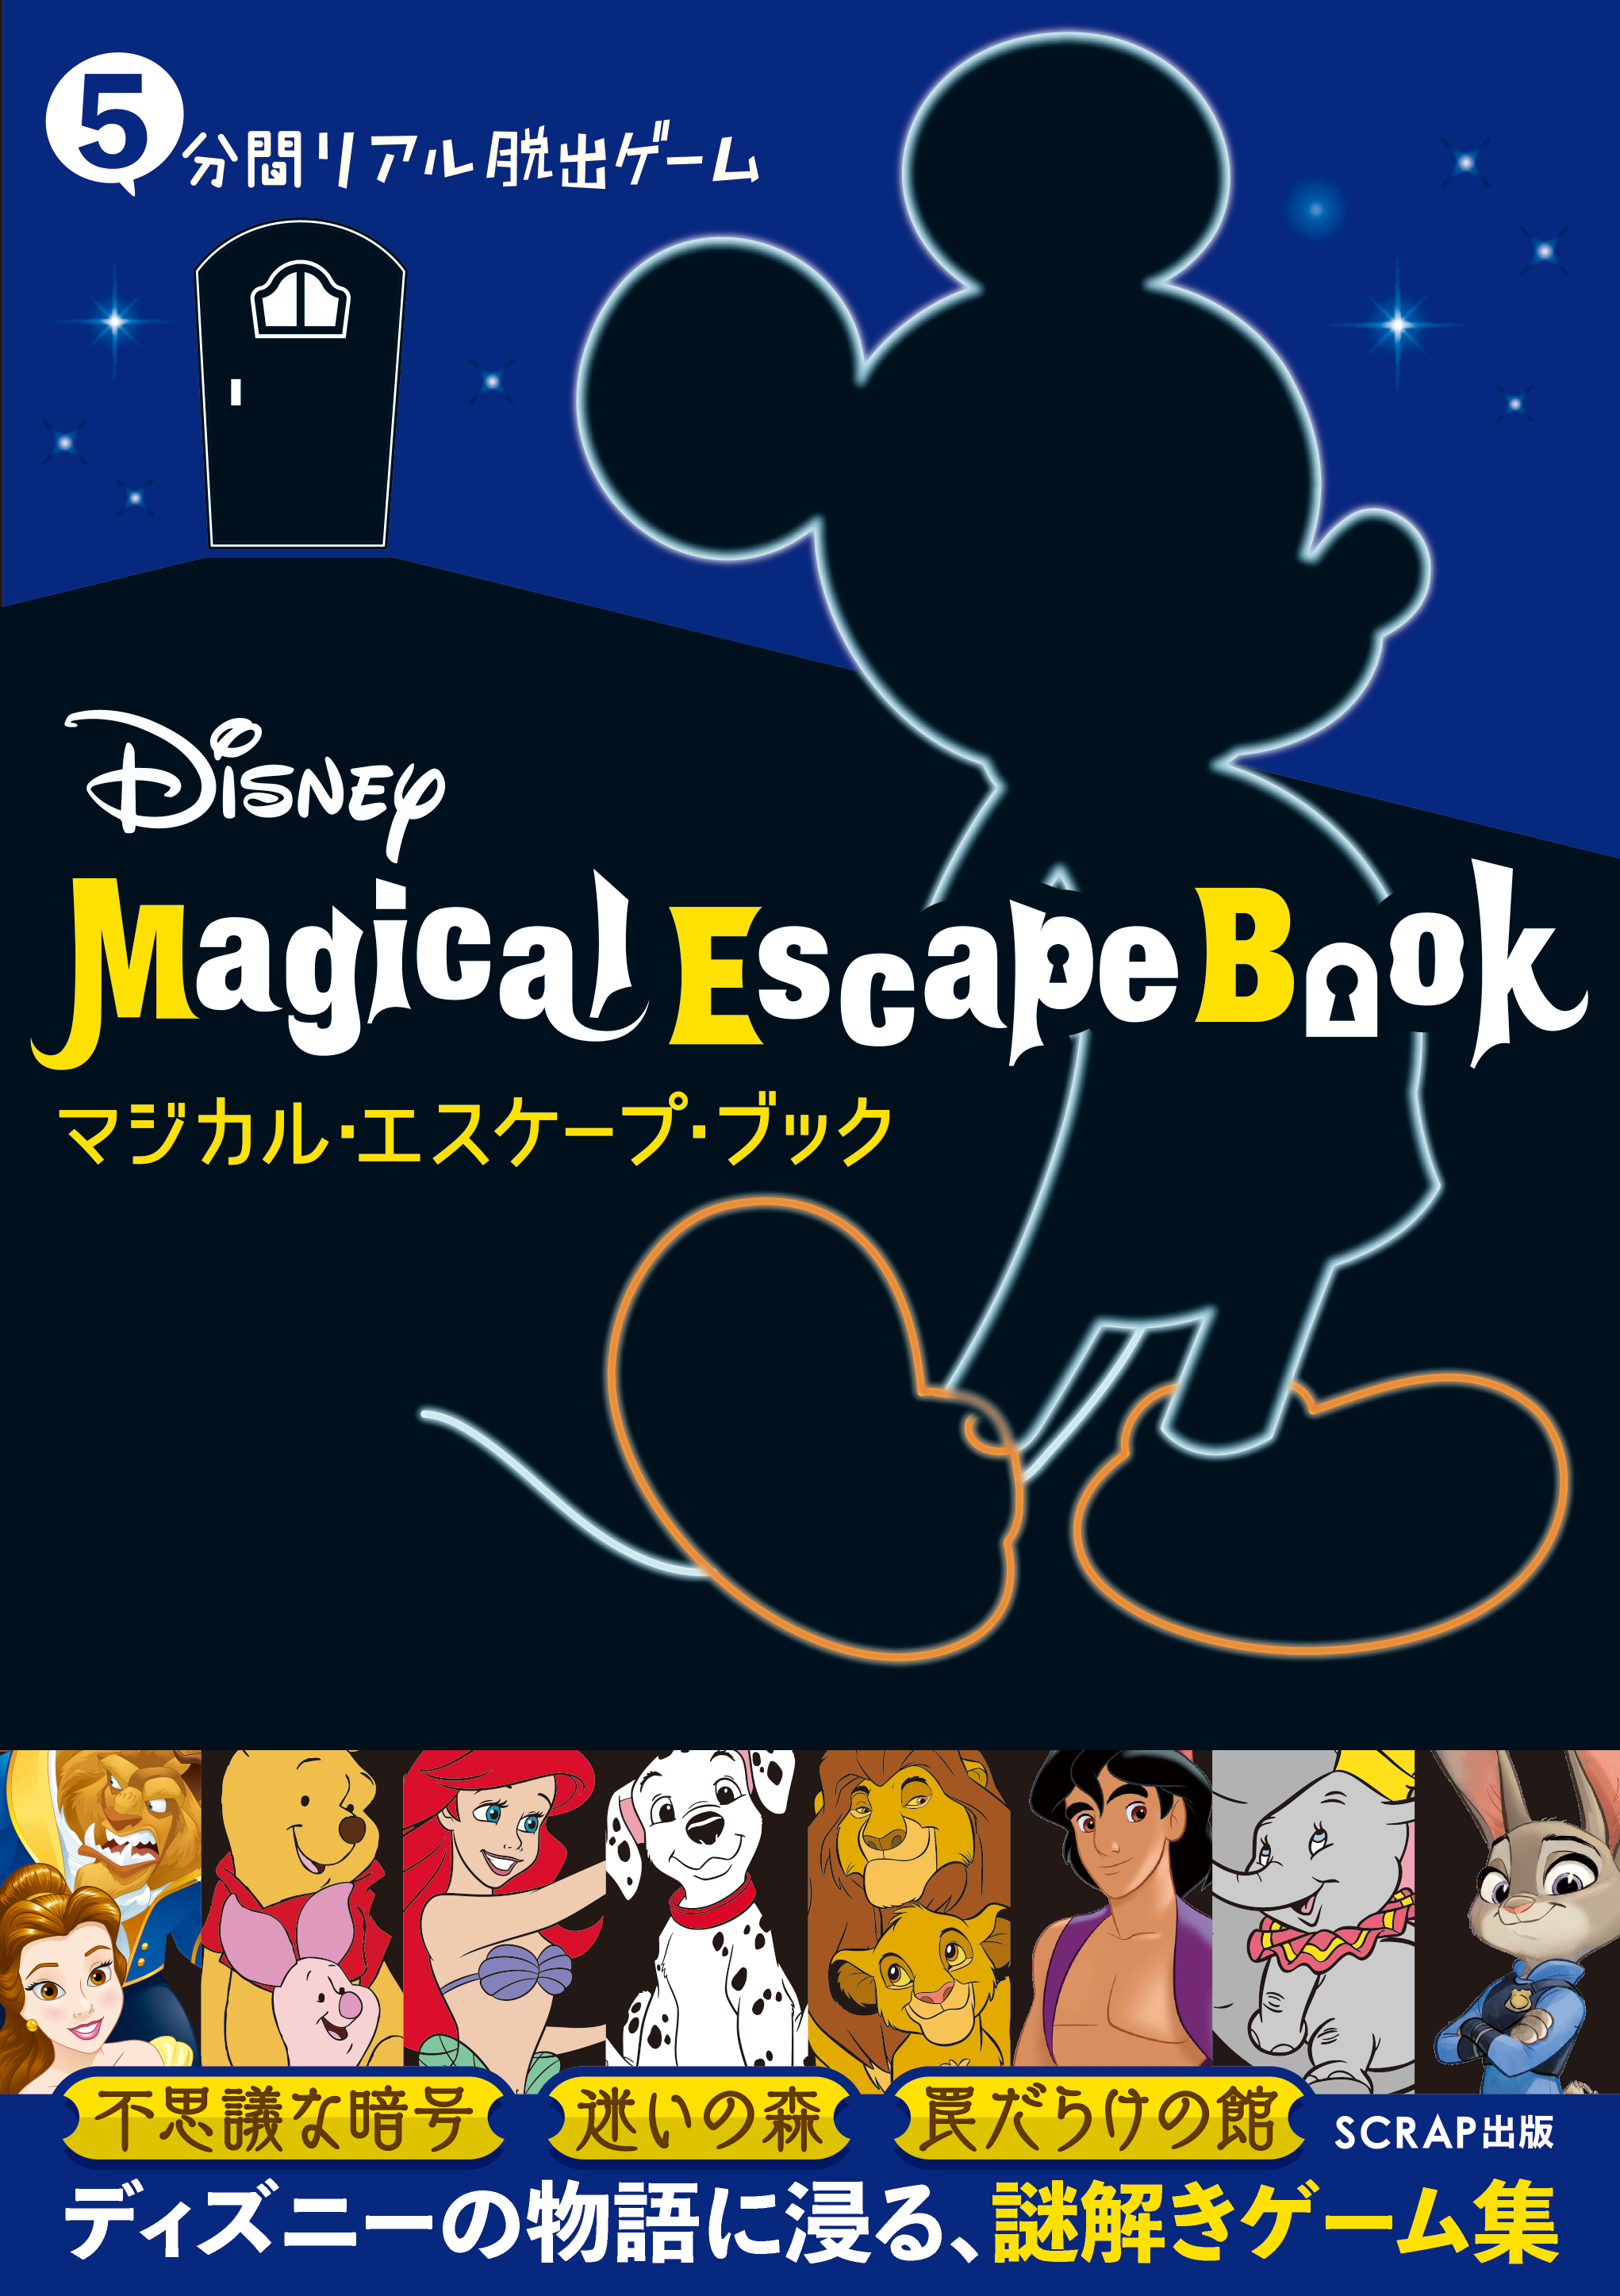 5分間リアル脱出ゲーム Disney Magical Escape Book 本日より予約開始 お知らせ リアル脱出ゲーム 体験型謎解き エンターテインメント